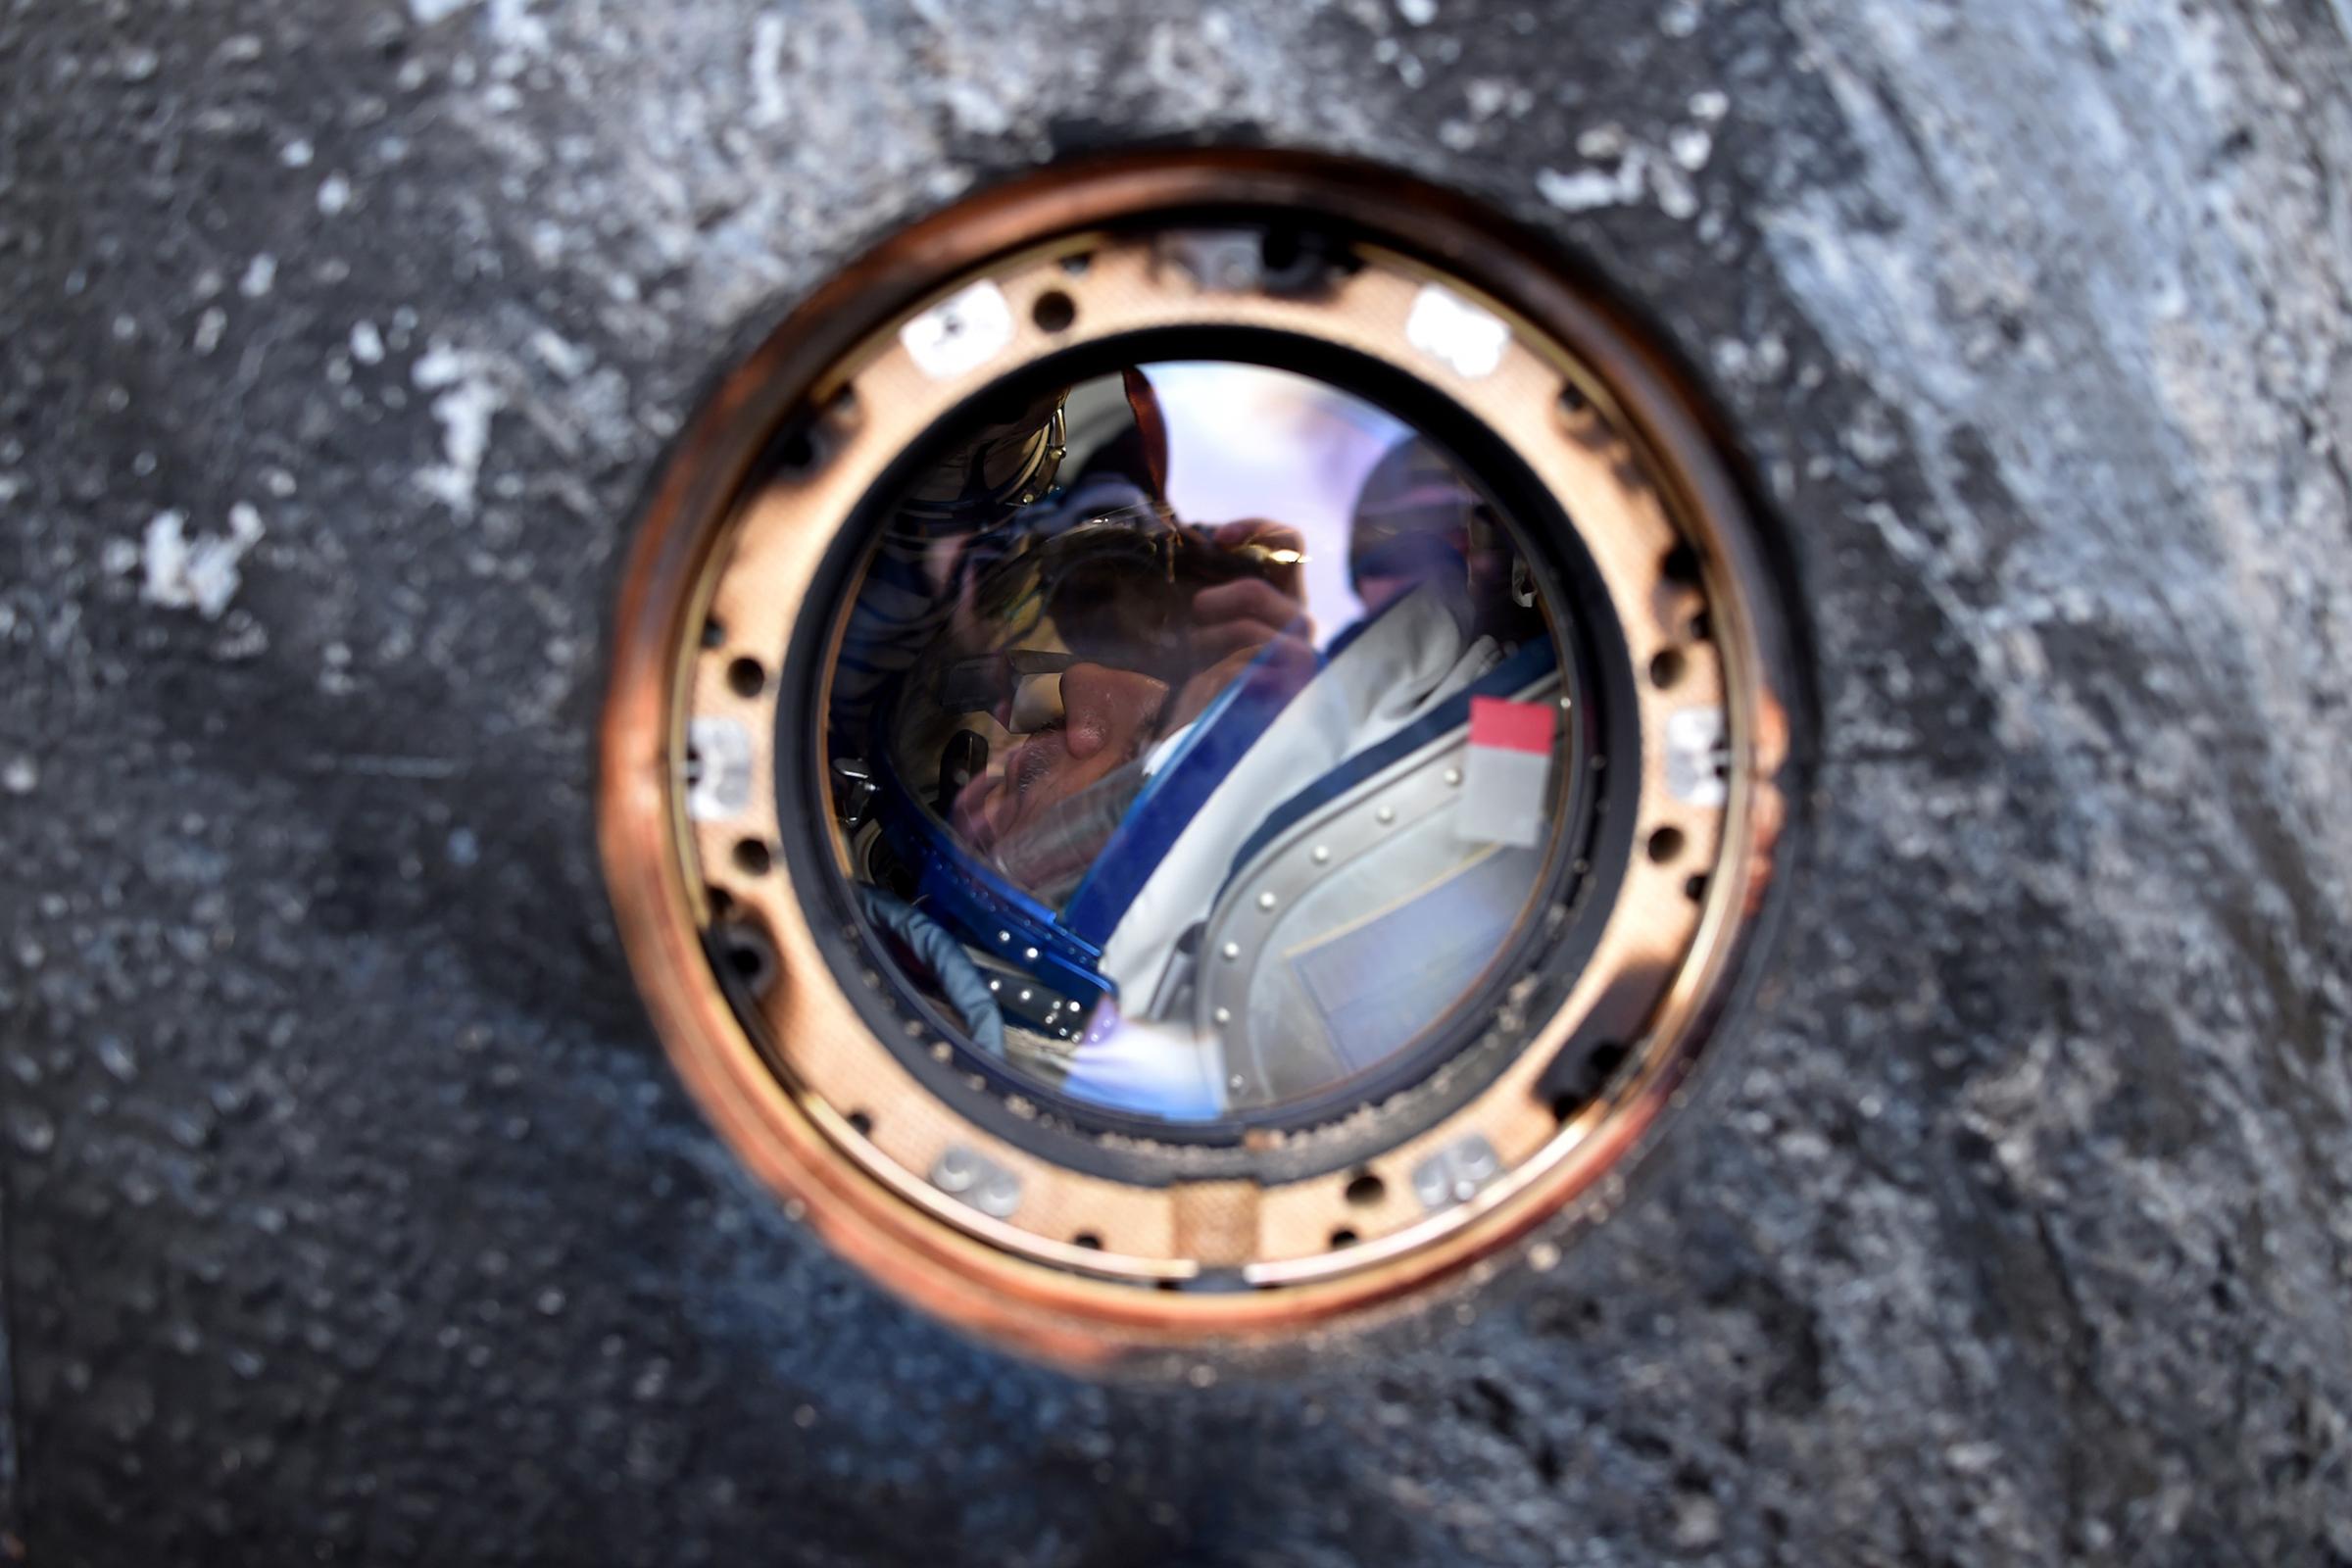 Mikhail Kornienko of Russia is seen inside the Soyuz TMA-18M space capsule after landing in Kazakhstan, on March 2, 2016.